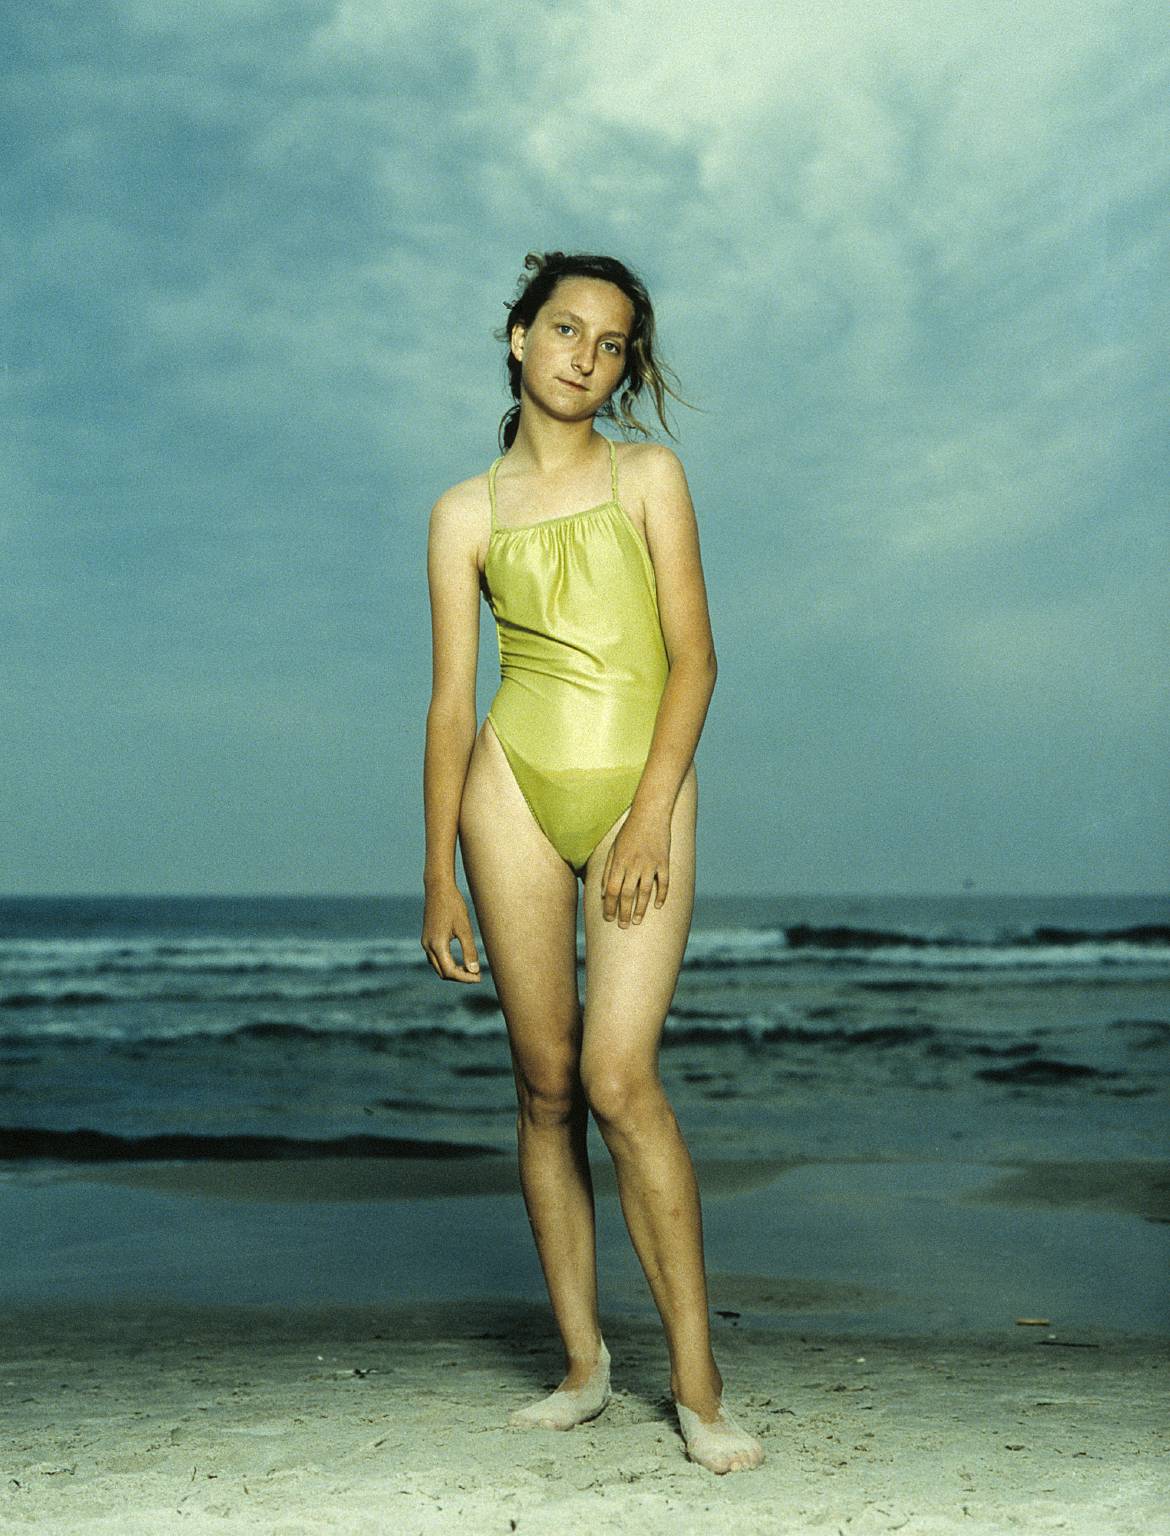 Ринеке Дейкстра (Rineke Dijkstra). Современное искусство Нидерландов. Beach Portraits - пляжные портреты